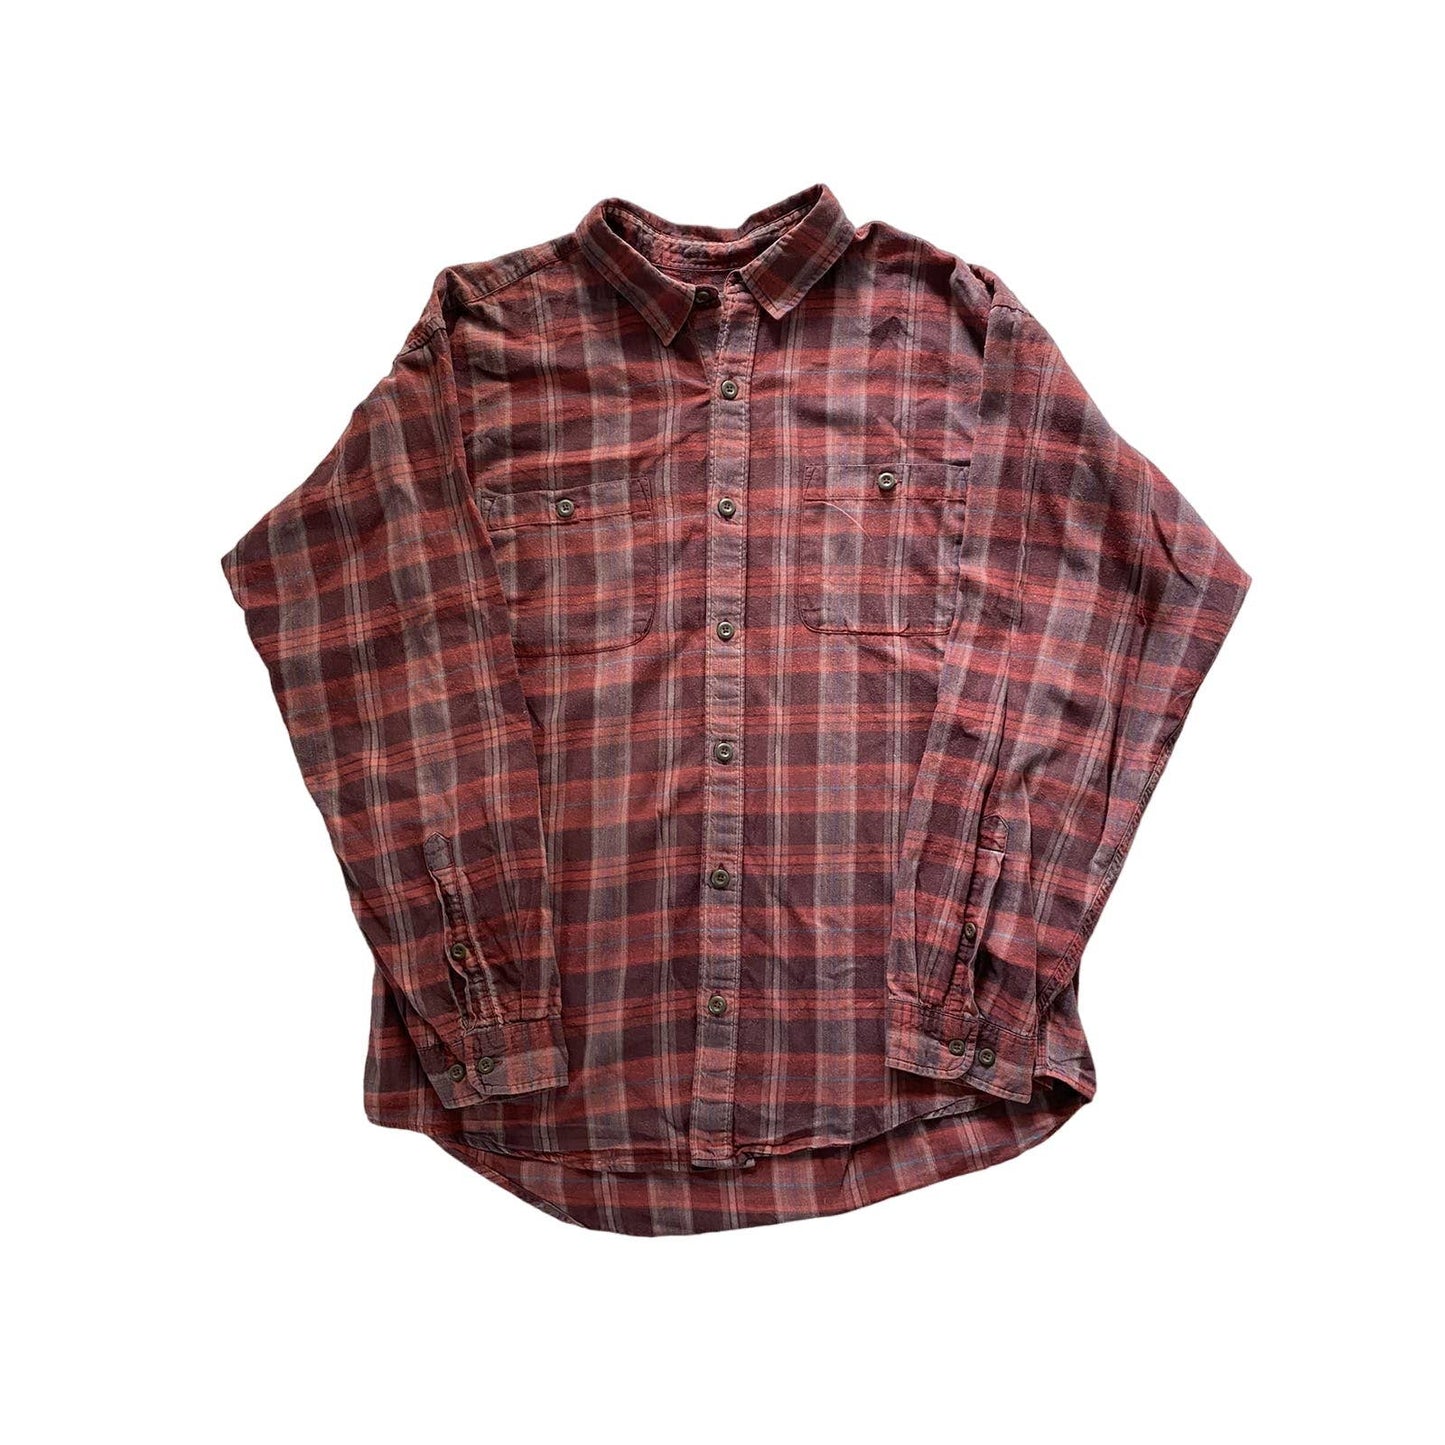 Patagonia tartan shirt long sleeve vintage red black